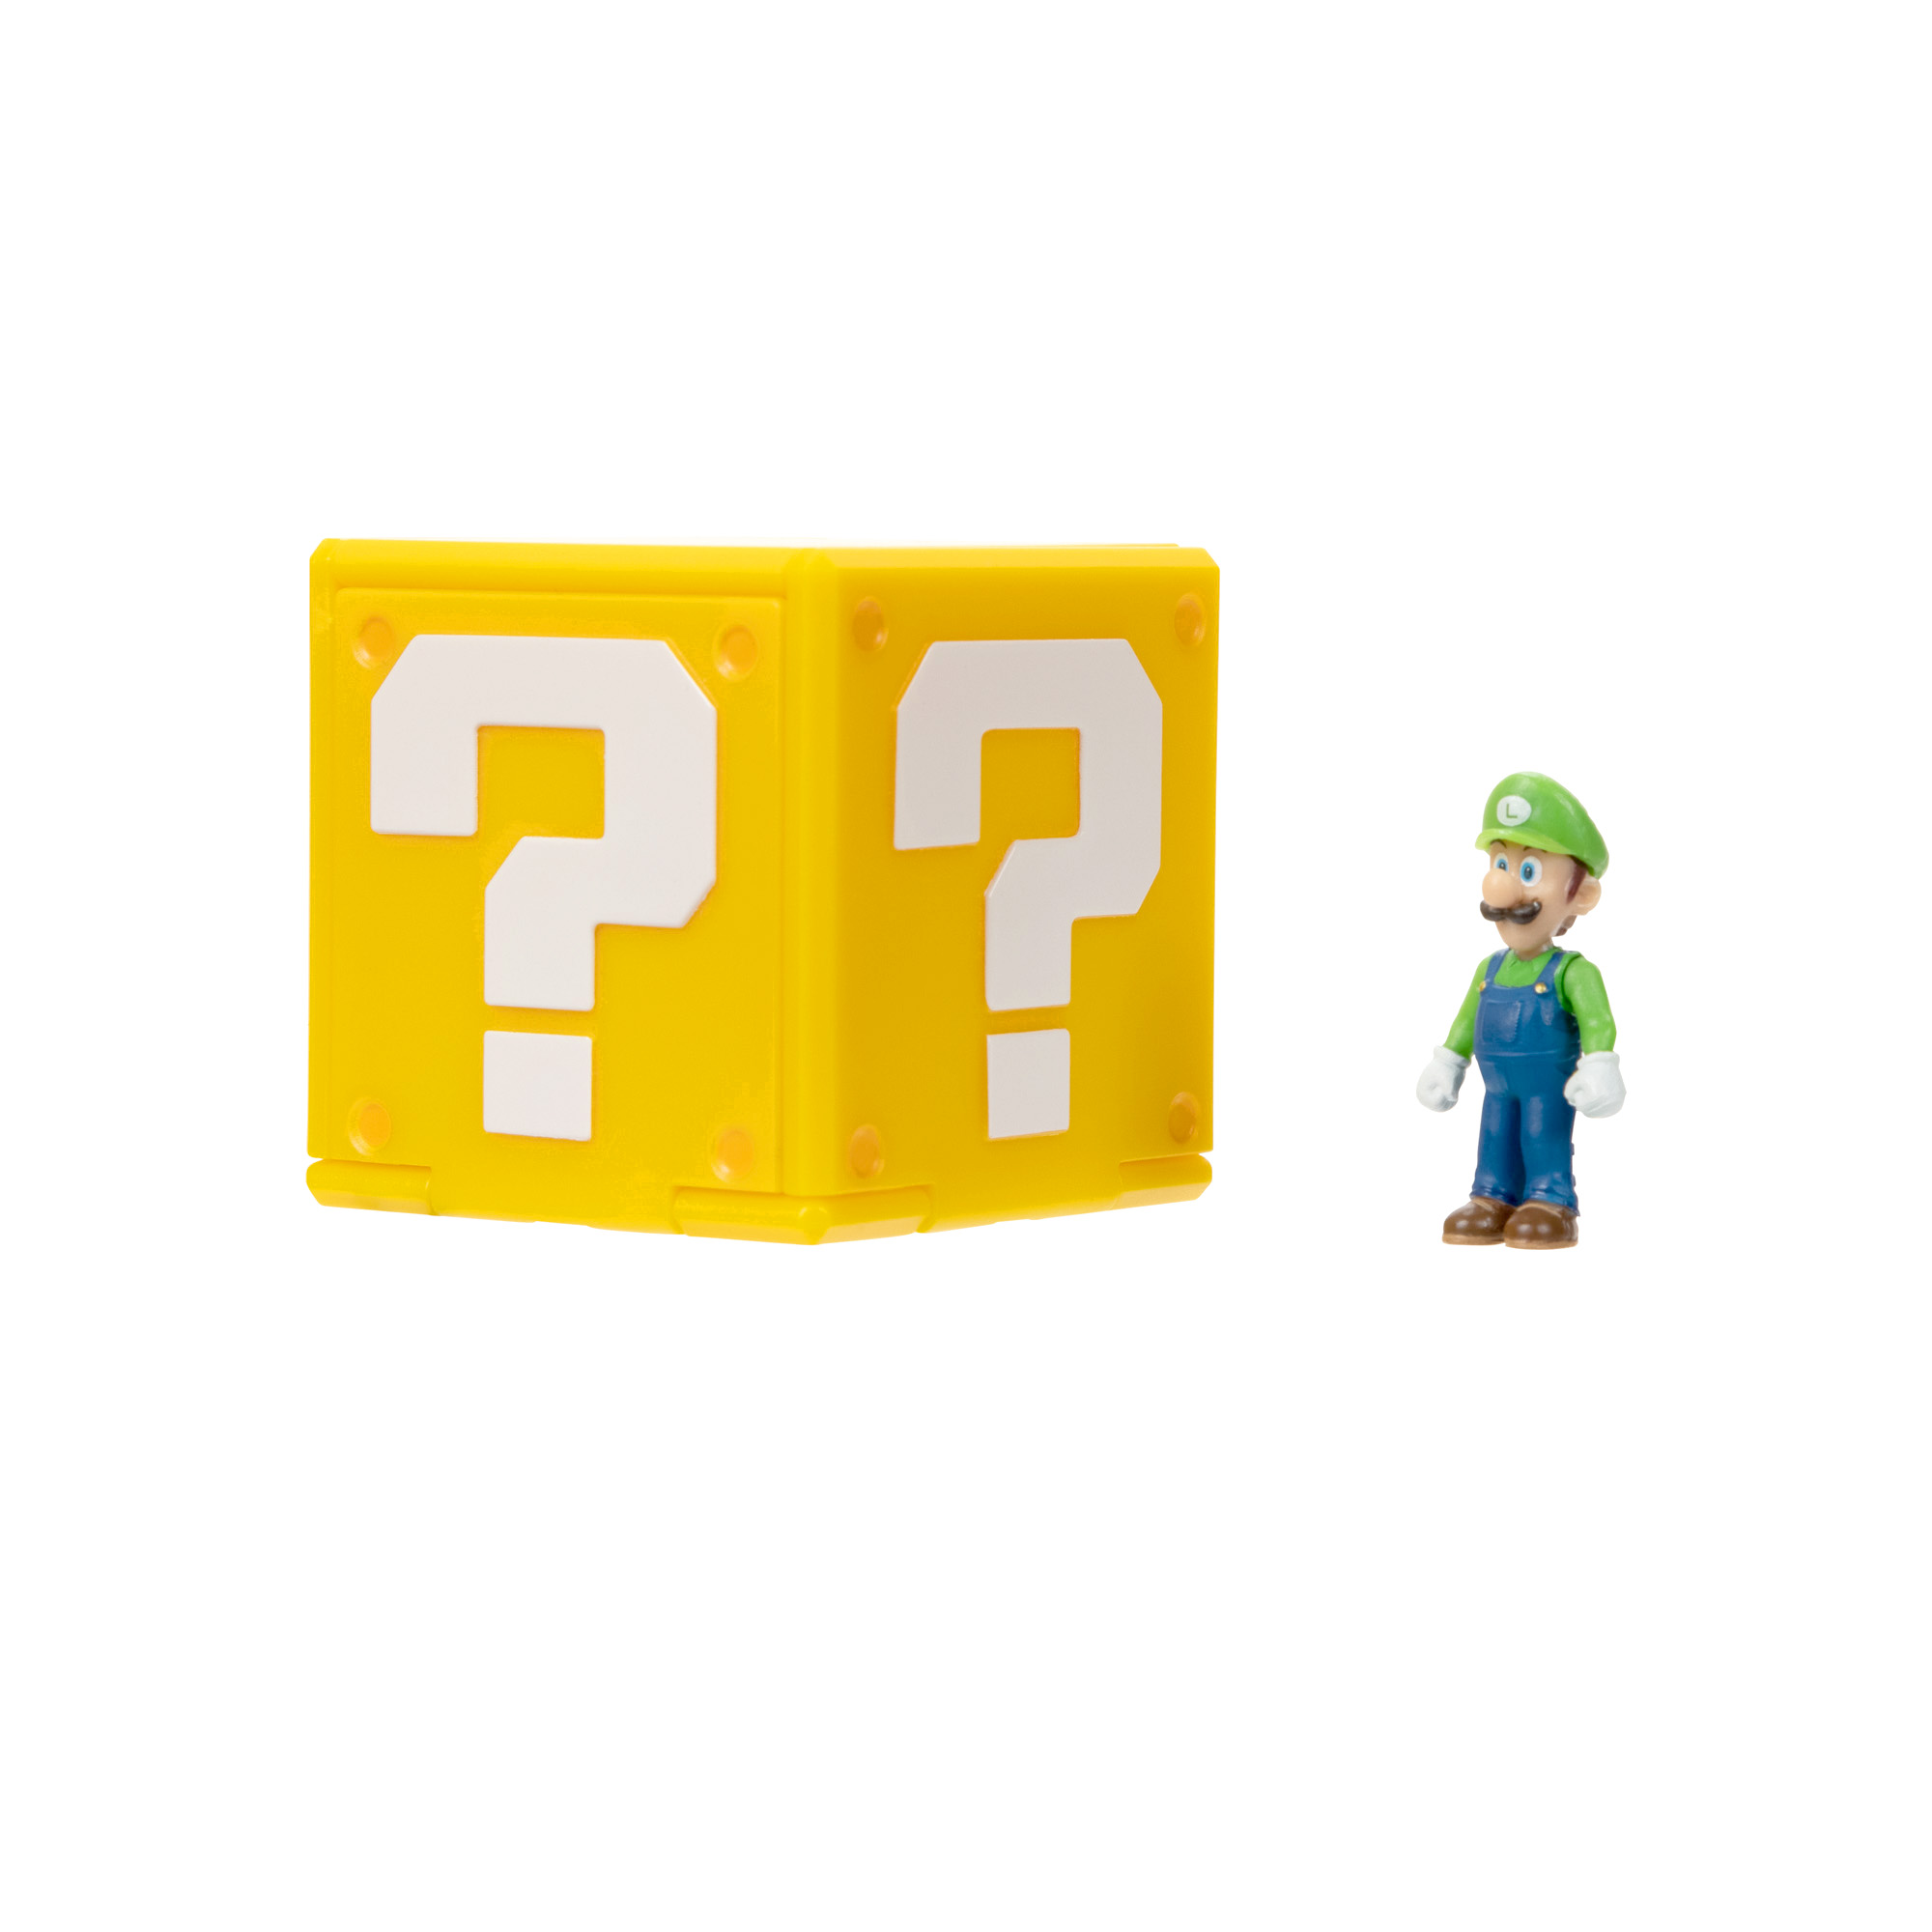 Super Mario Movie Mini Cubo con personaggi assorti 4 cm - Super Mario